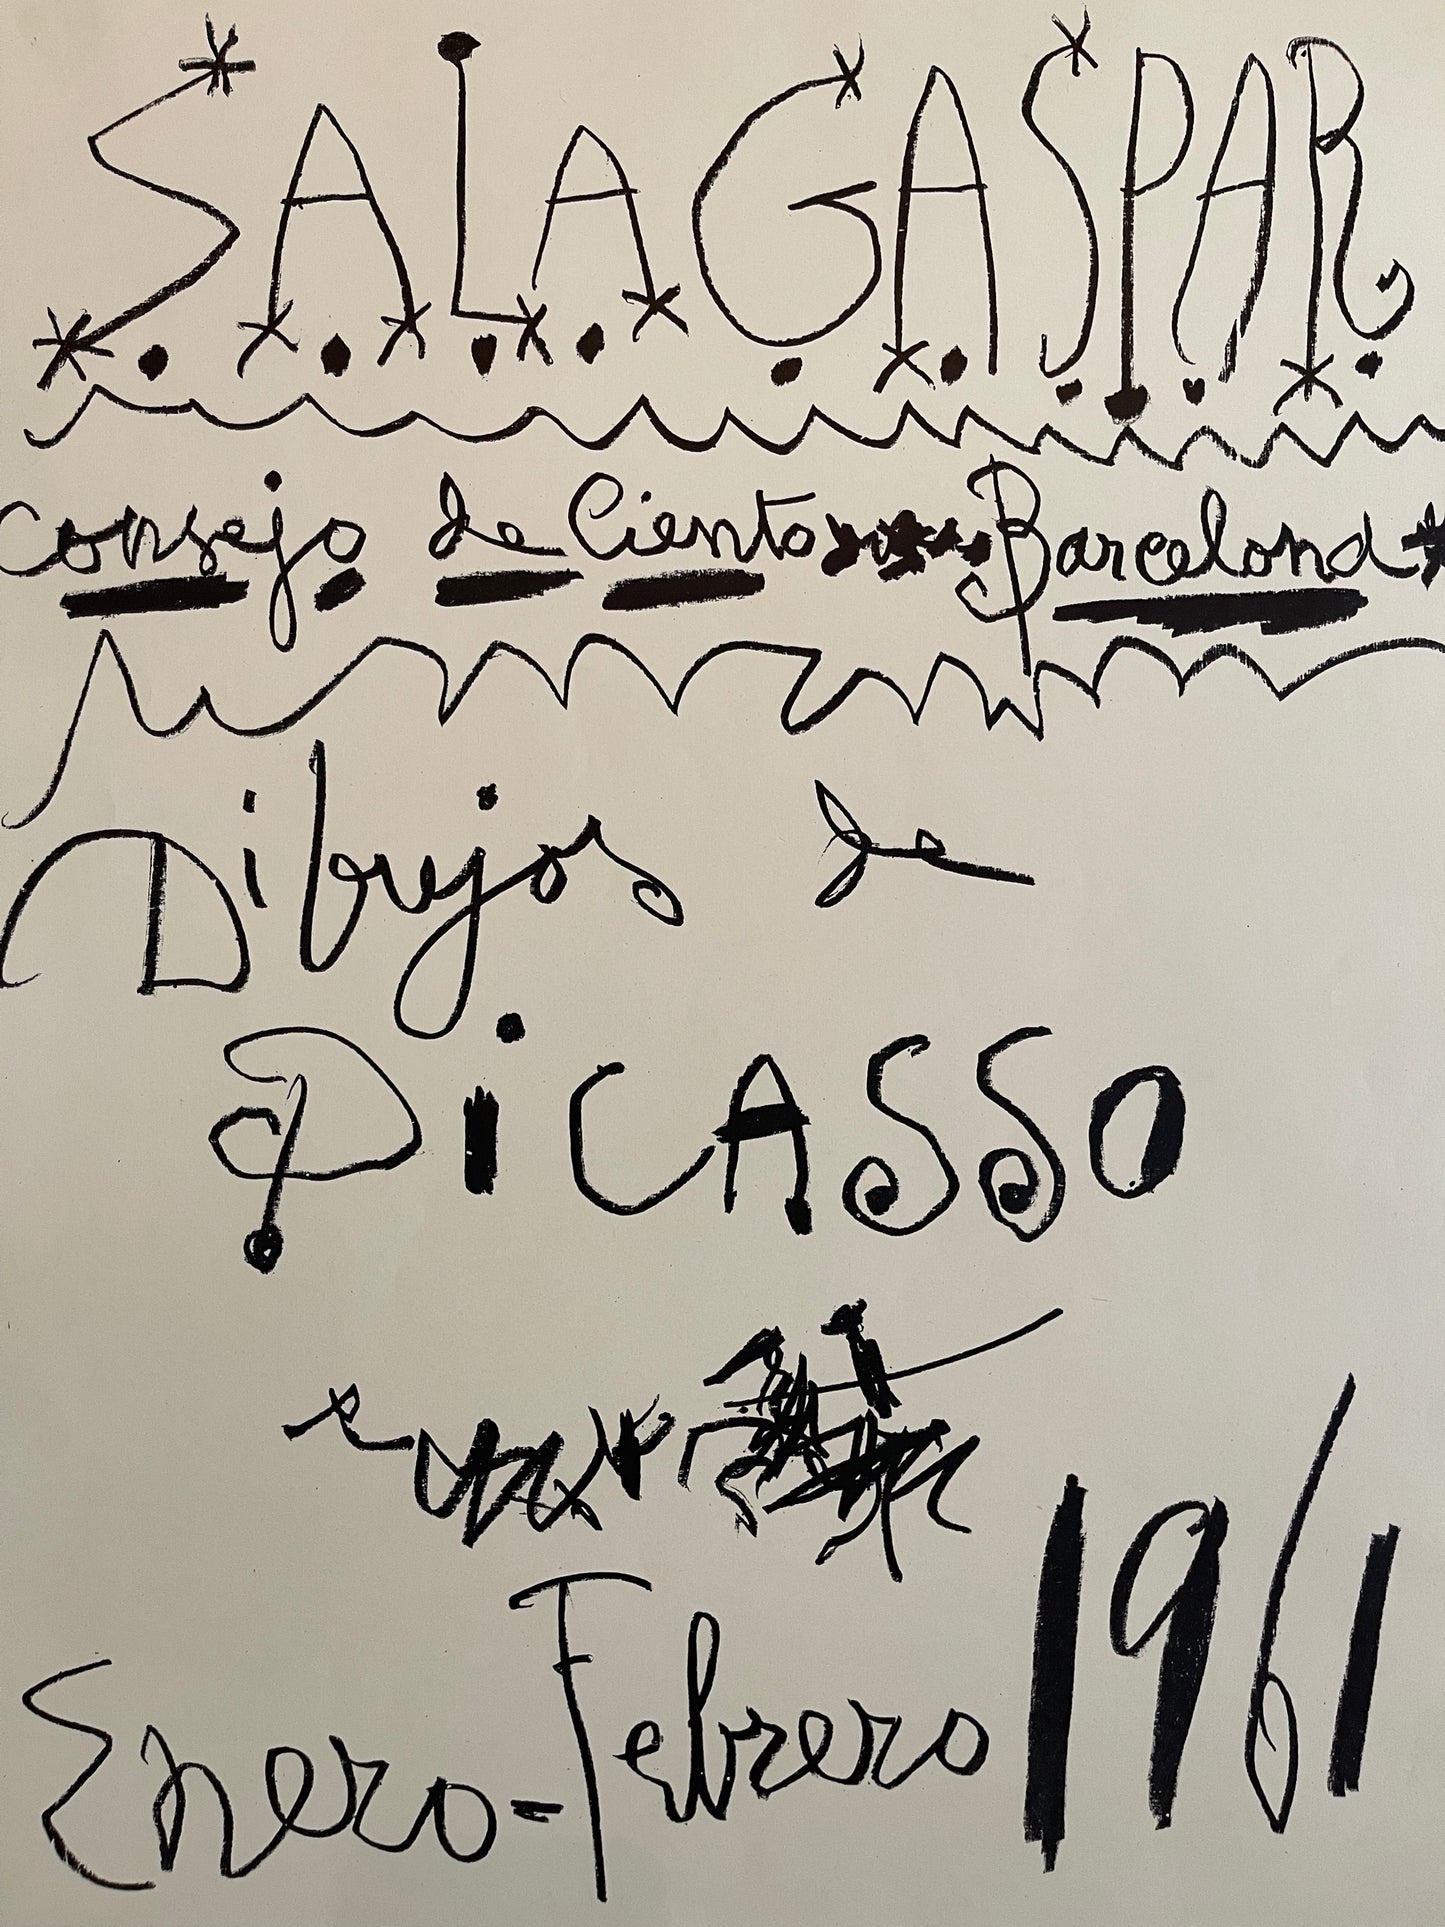 Pablo Picasso Lithograph: "Sala Gaspar", 1961